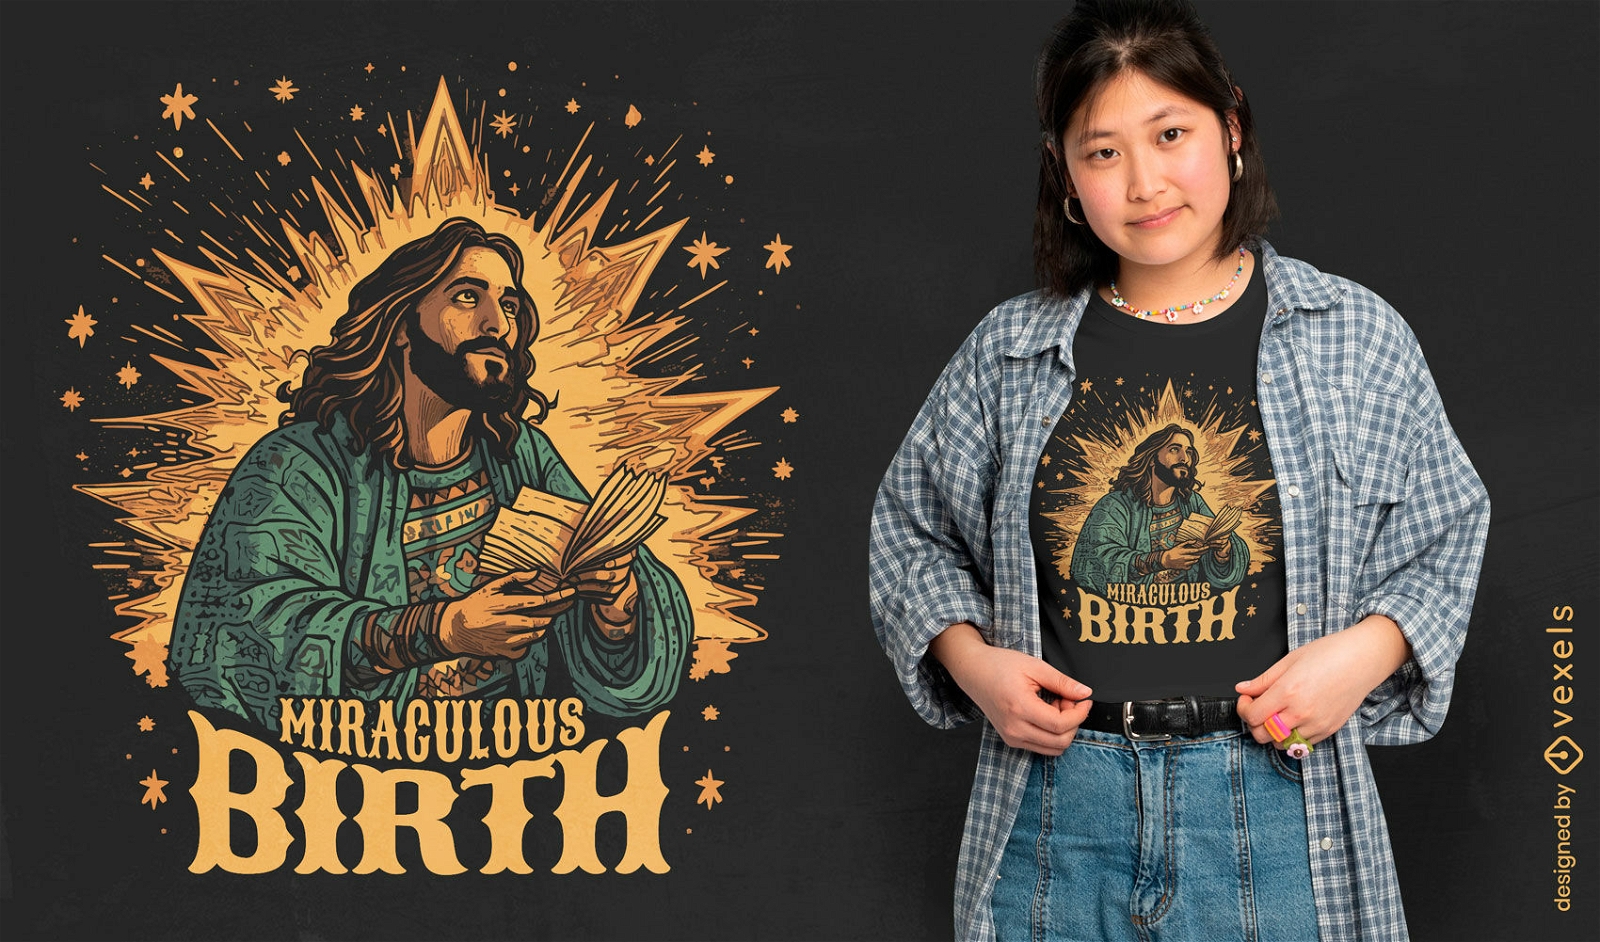 Diseño de camiseta de nacimiento milagroso de Jesús.